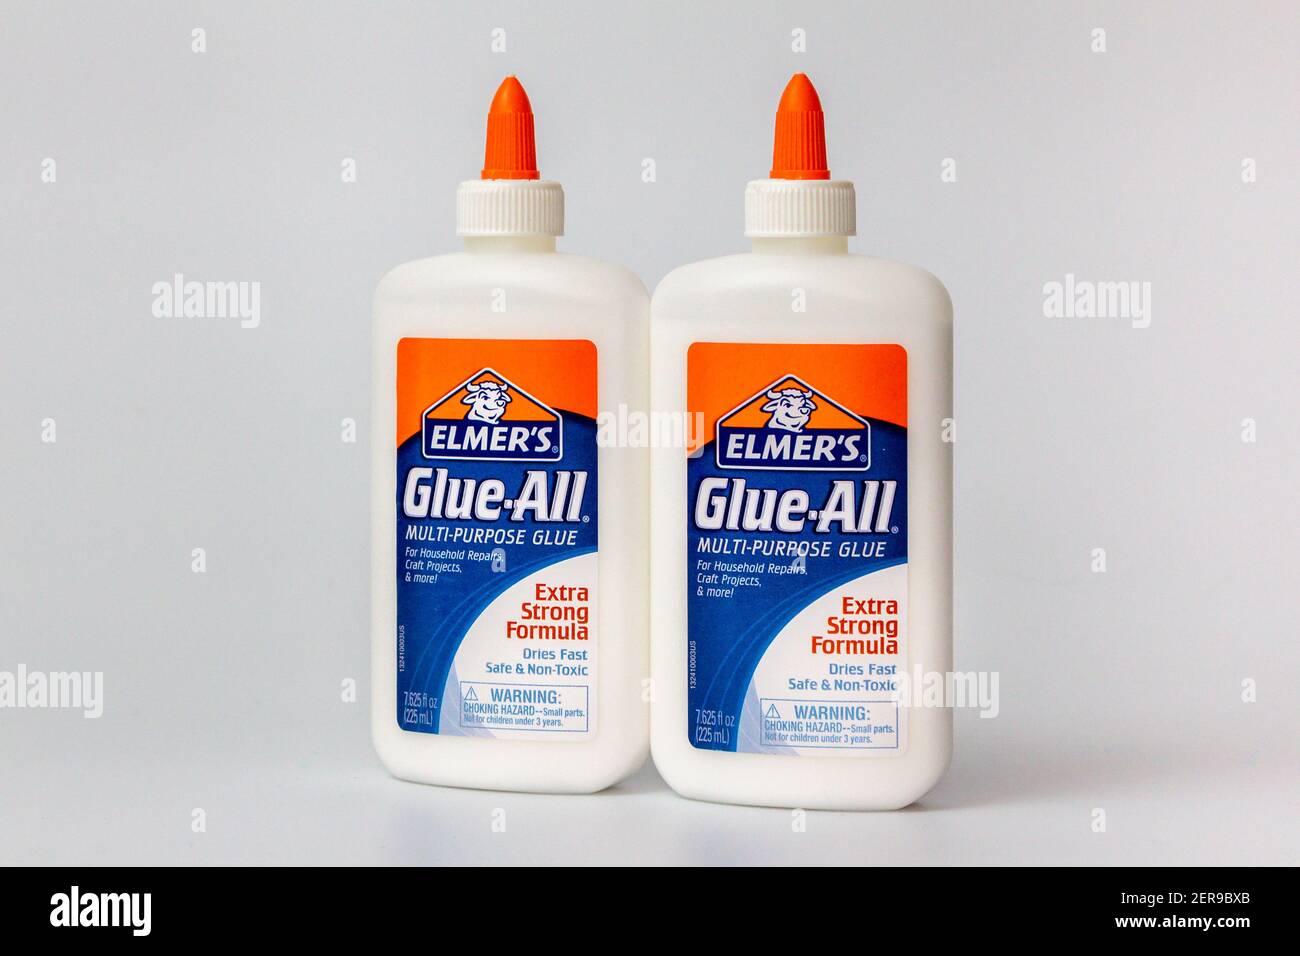 Elmer's Glue-All Multi-Purpose Glue - 7.625 fl oz